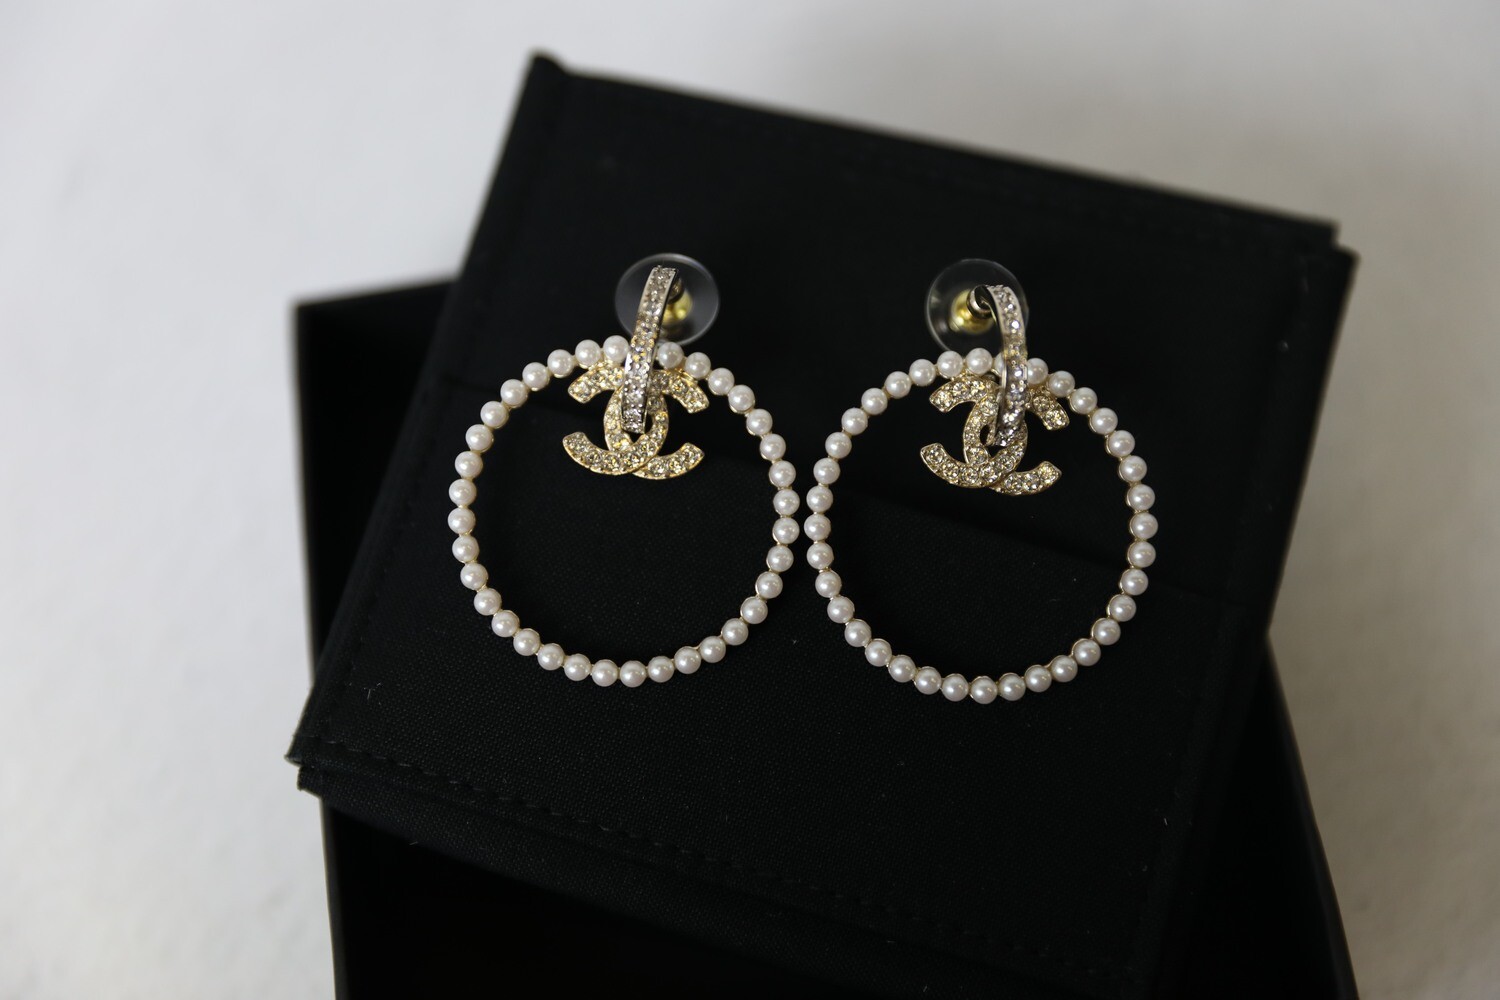 Chanel Cc Crystal Drop Earrings